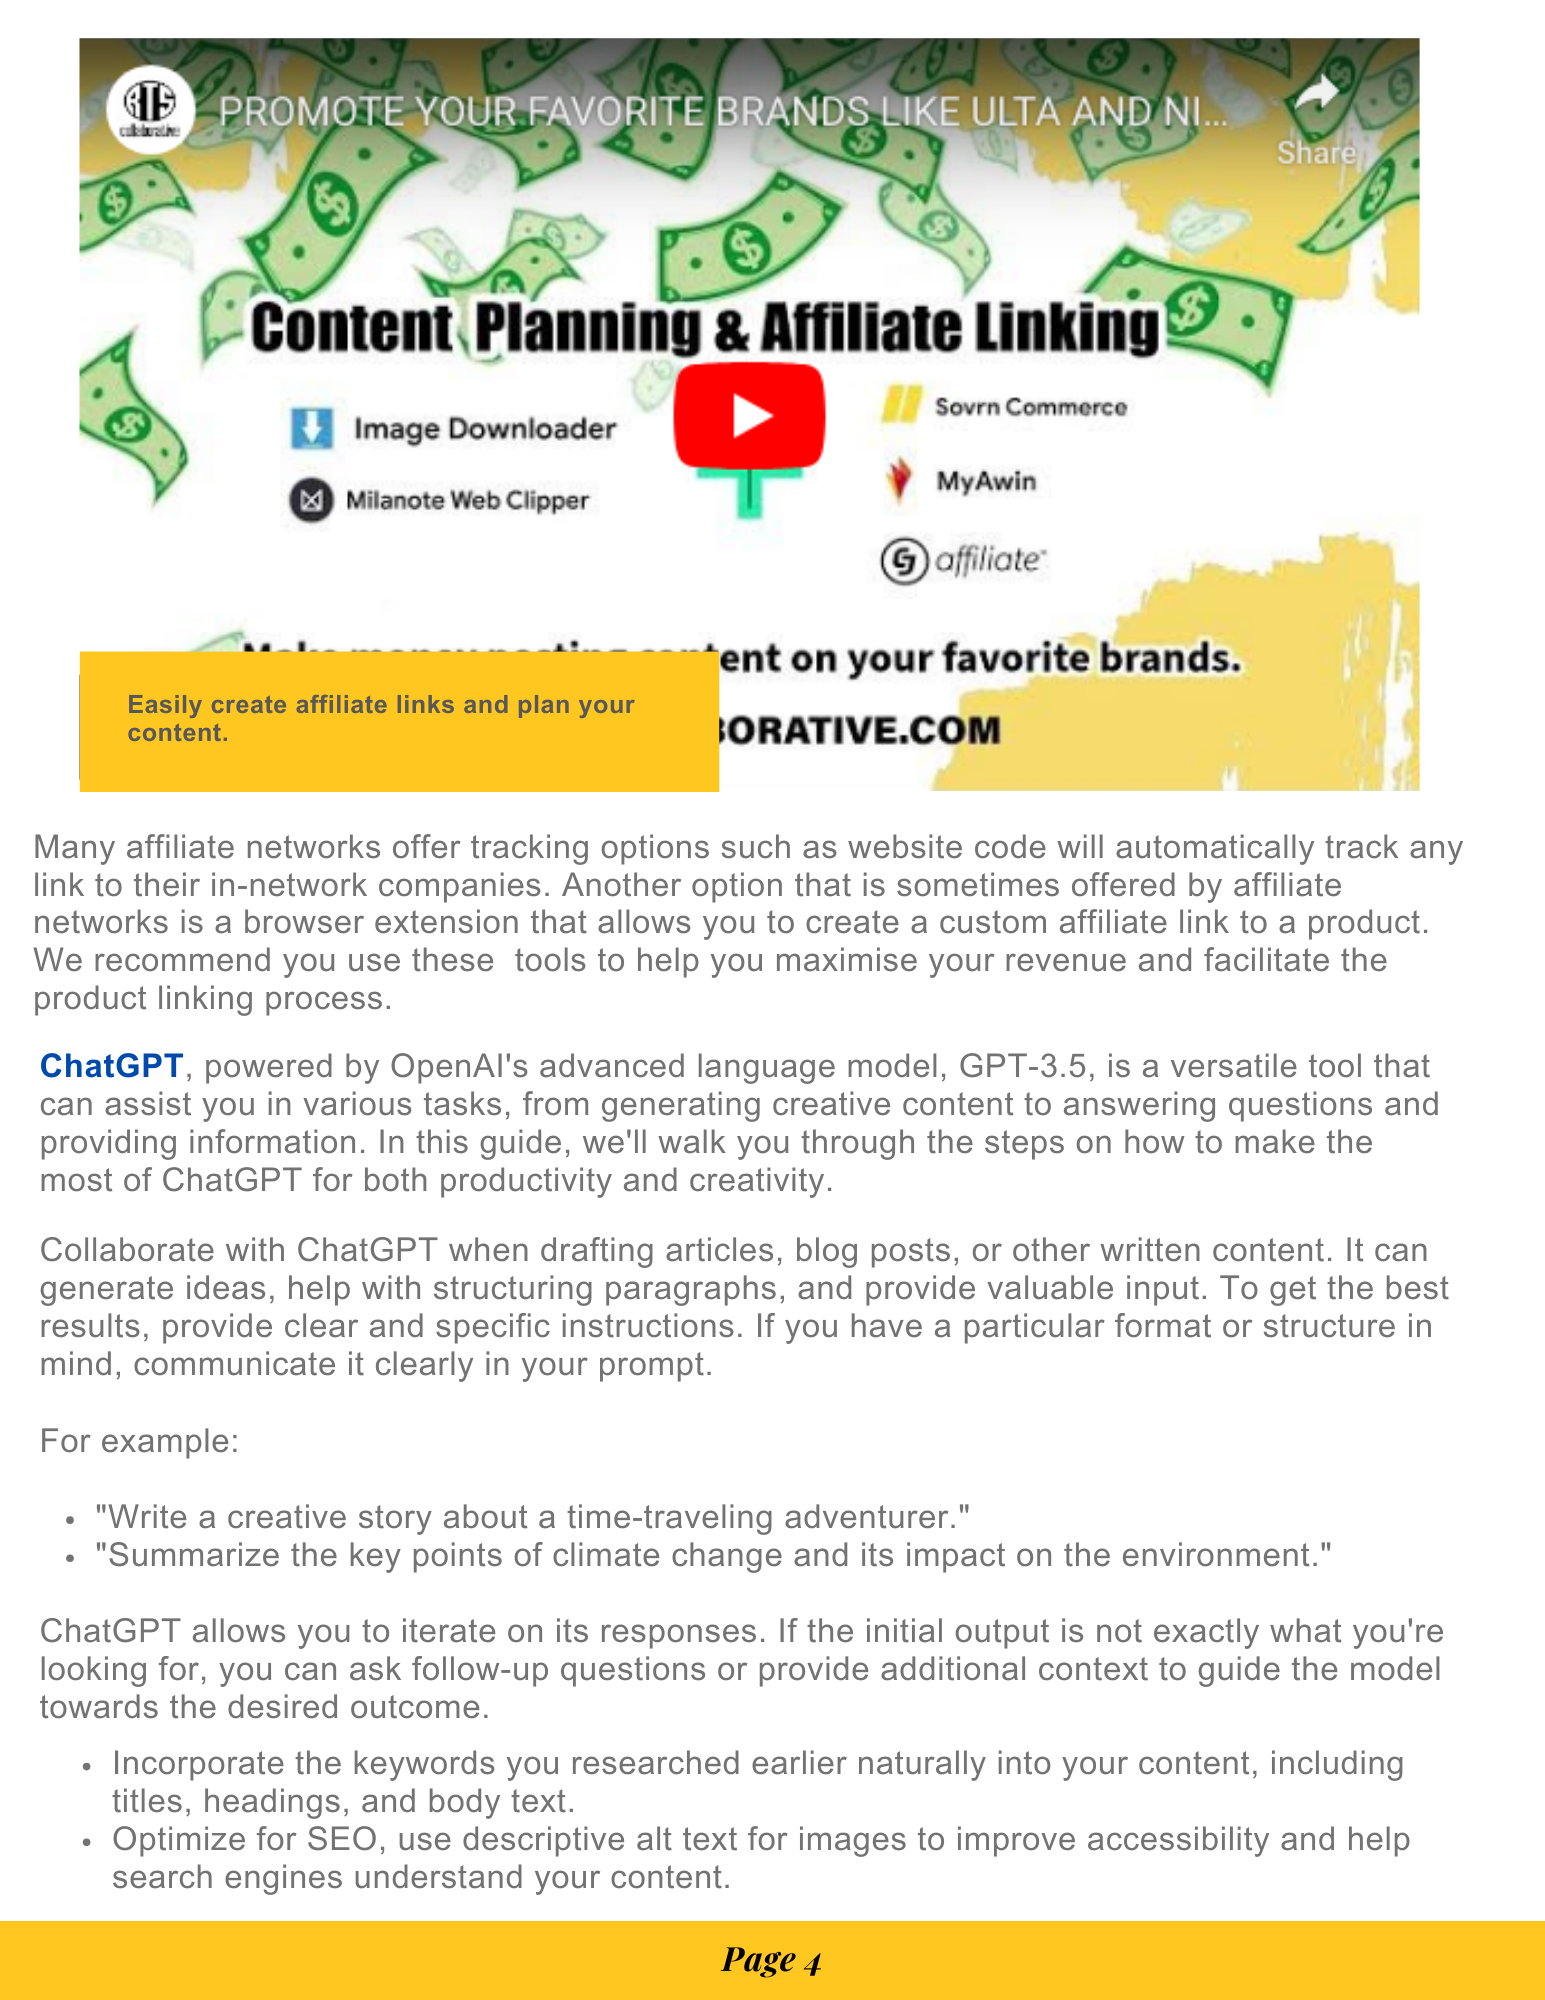 Digital Marketing Coursebook—Create Content, Earn Passive Income - RTS Collaborative